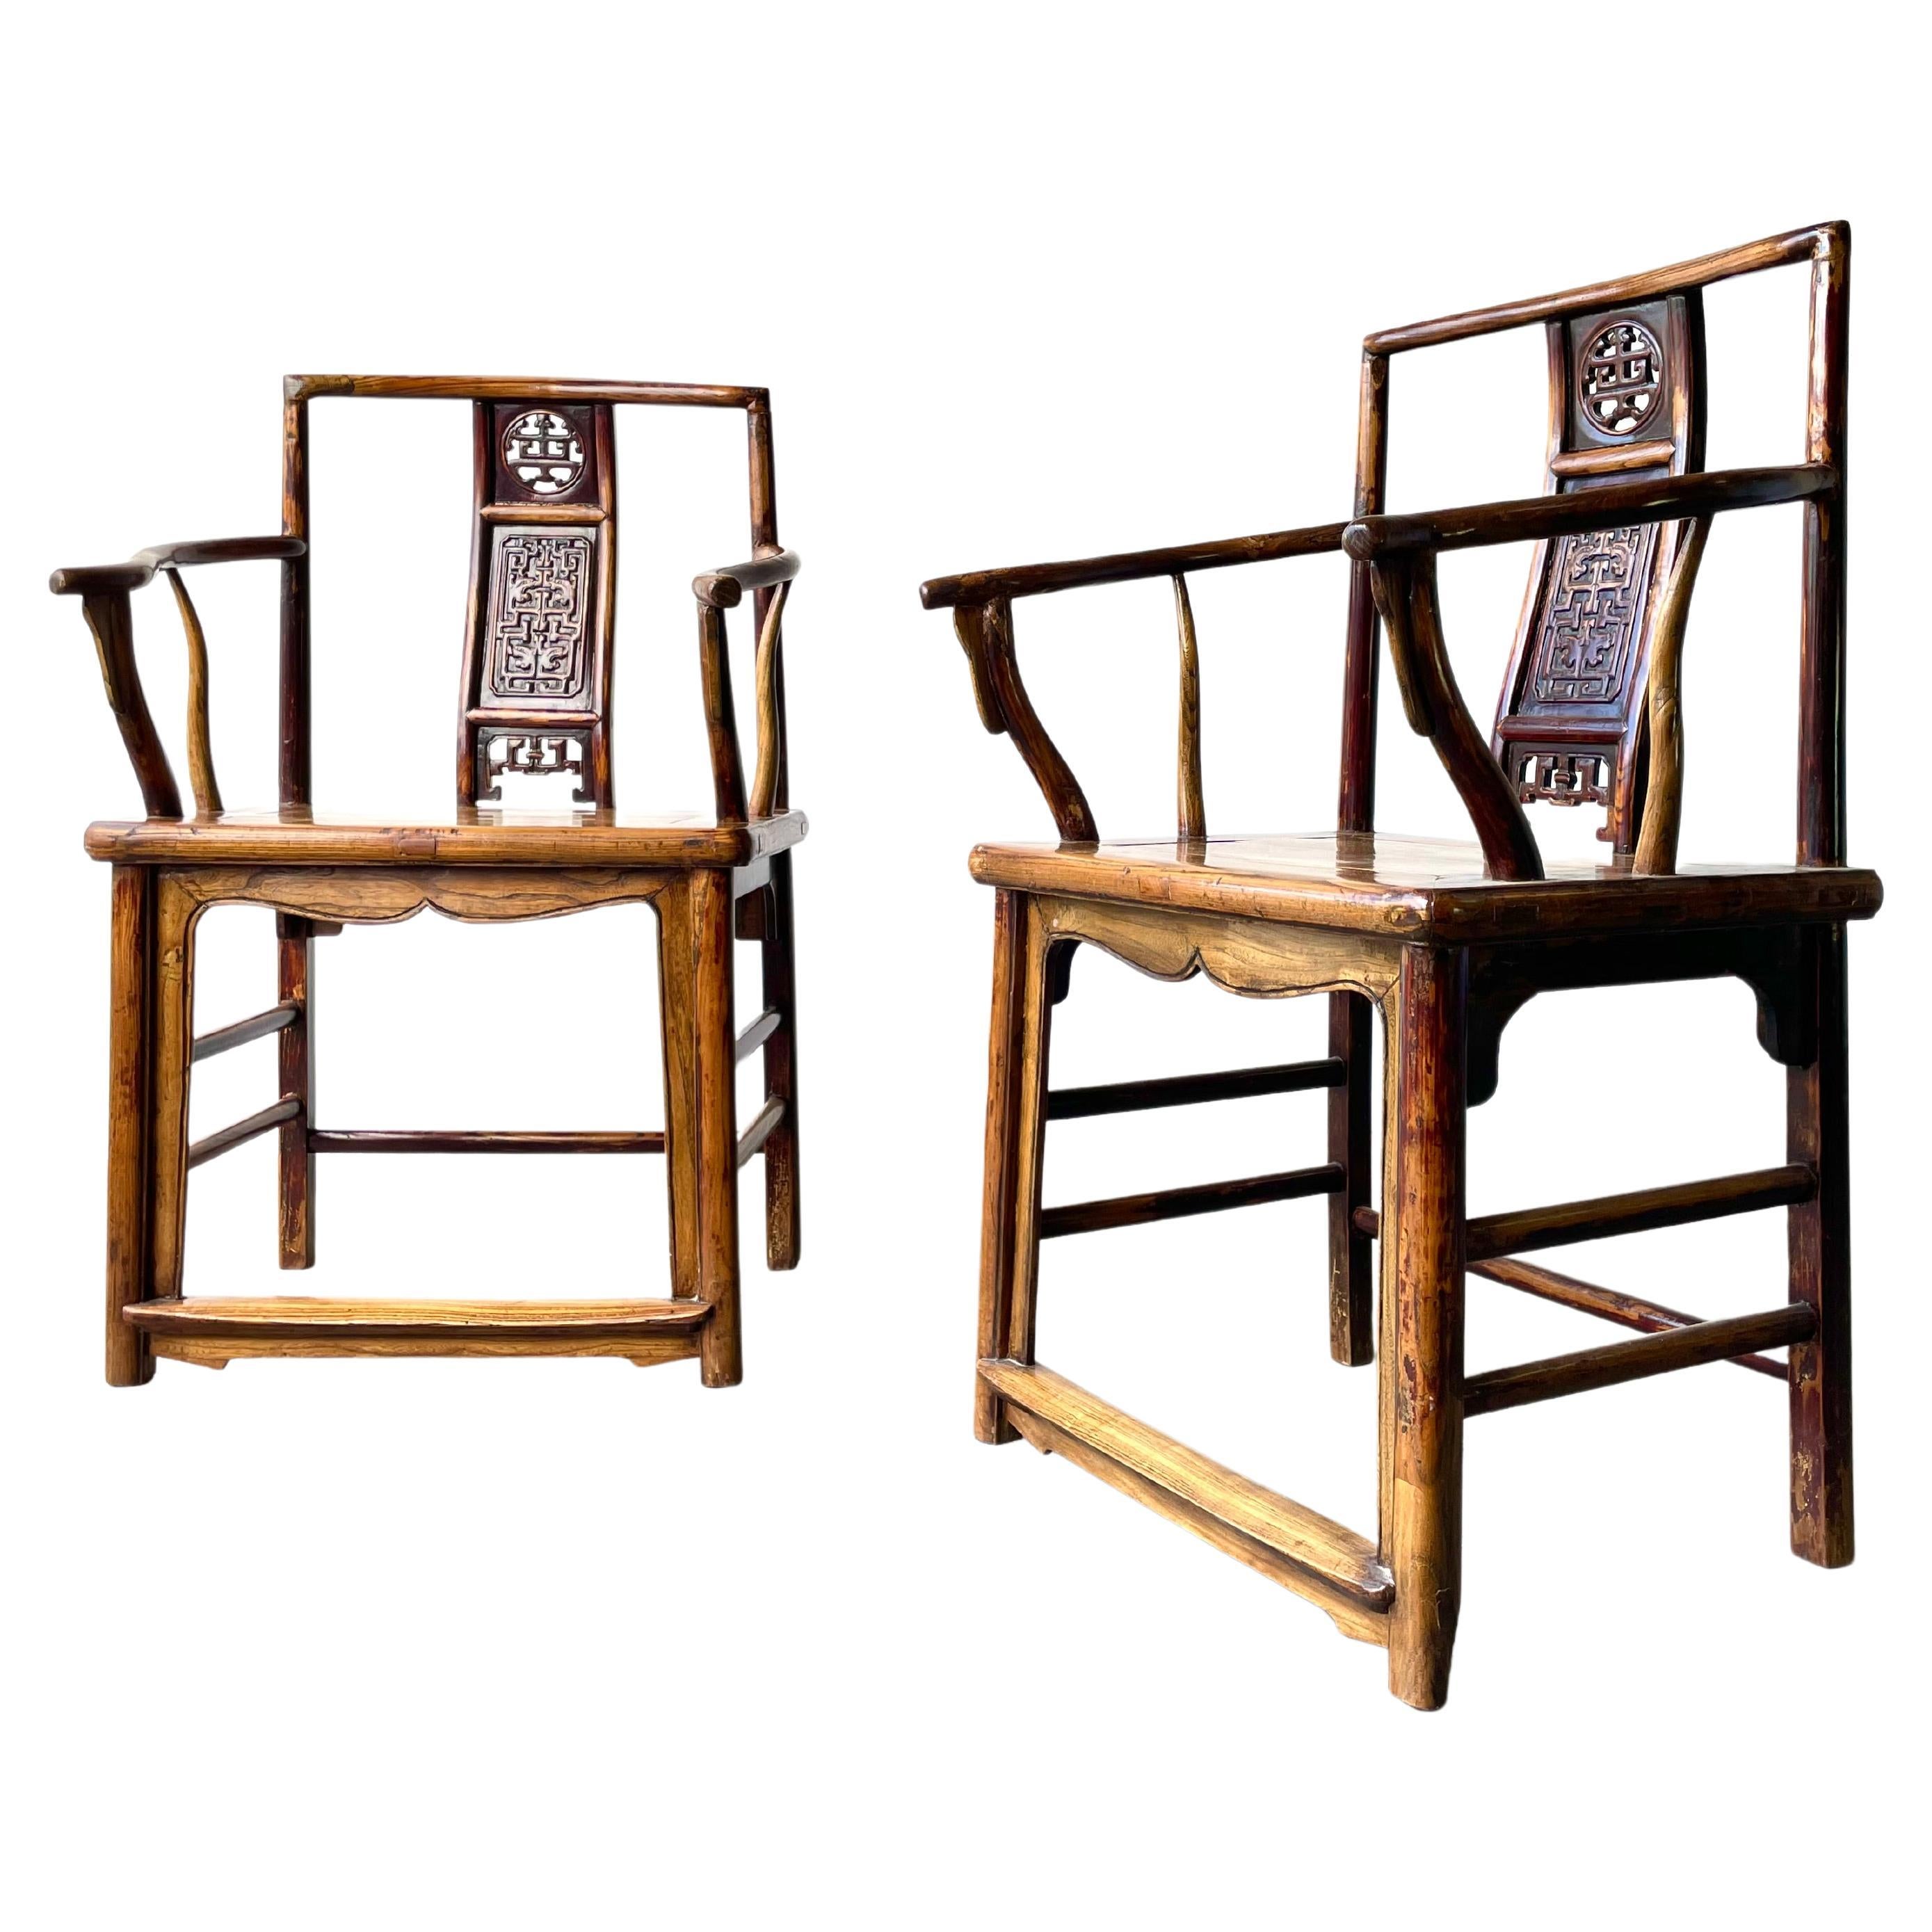 Magnifique paire de fauteuils chinois en bois de feuillus du 19e, 1800e siècle